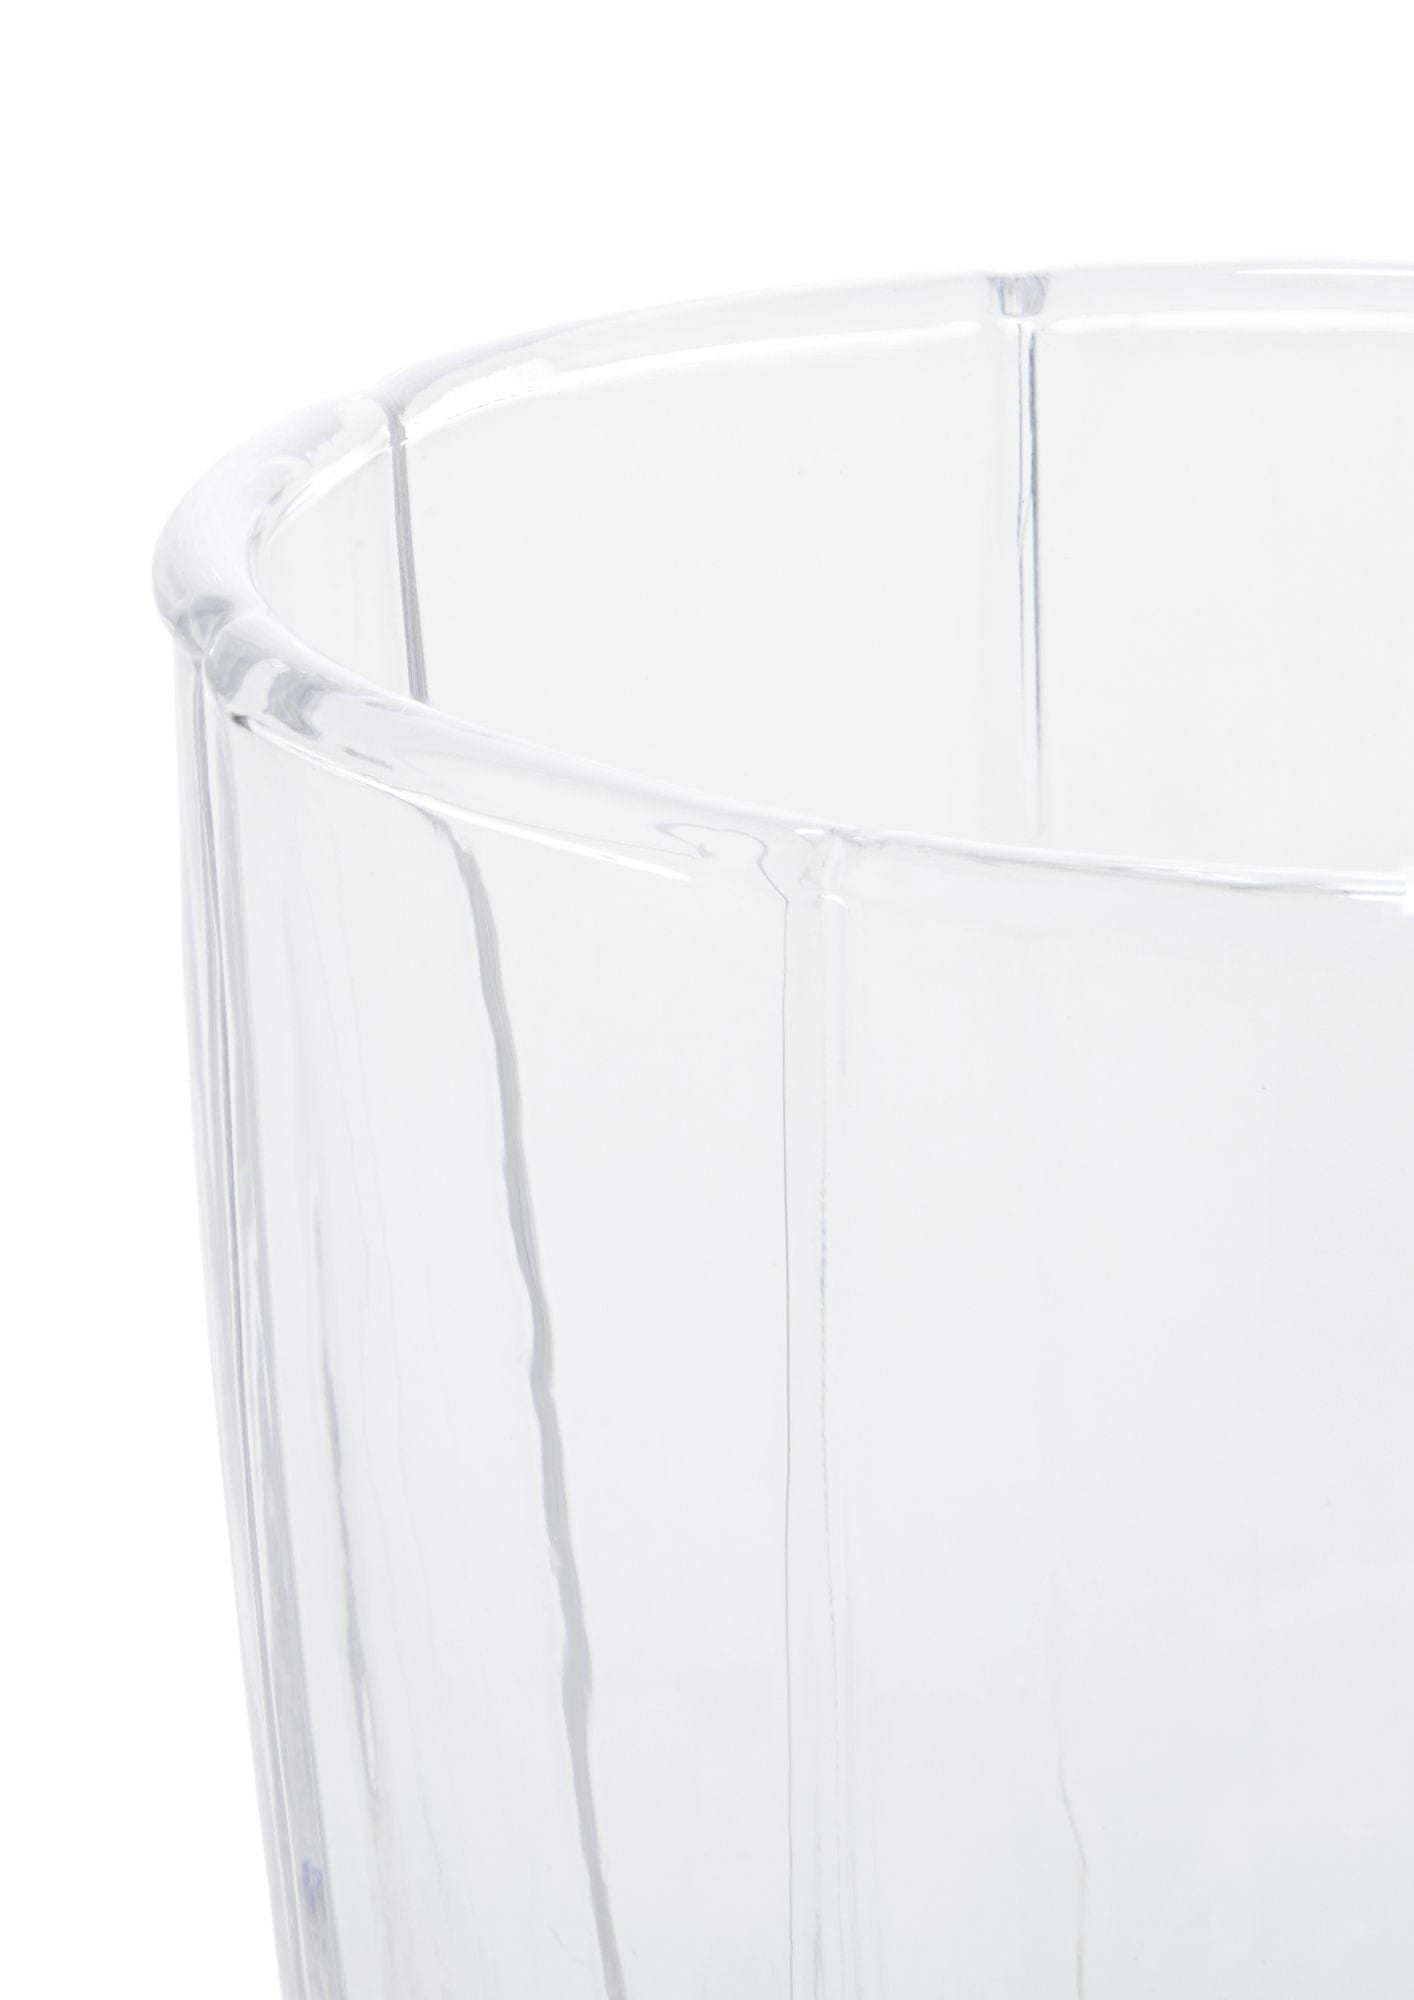 Juego de vidrio de agua Holmegaard Lily de 2 320 ml, transparente